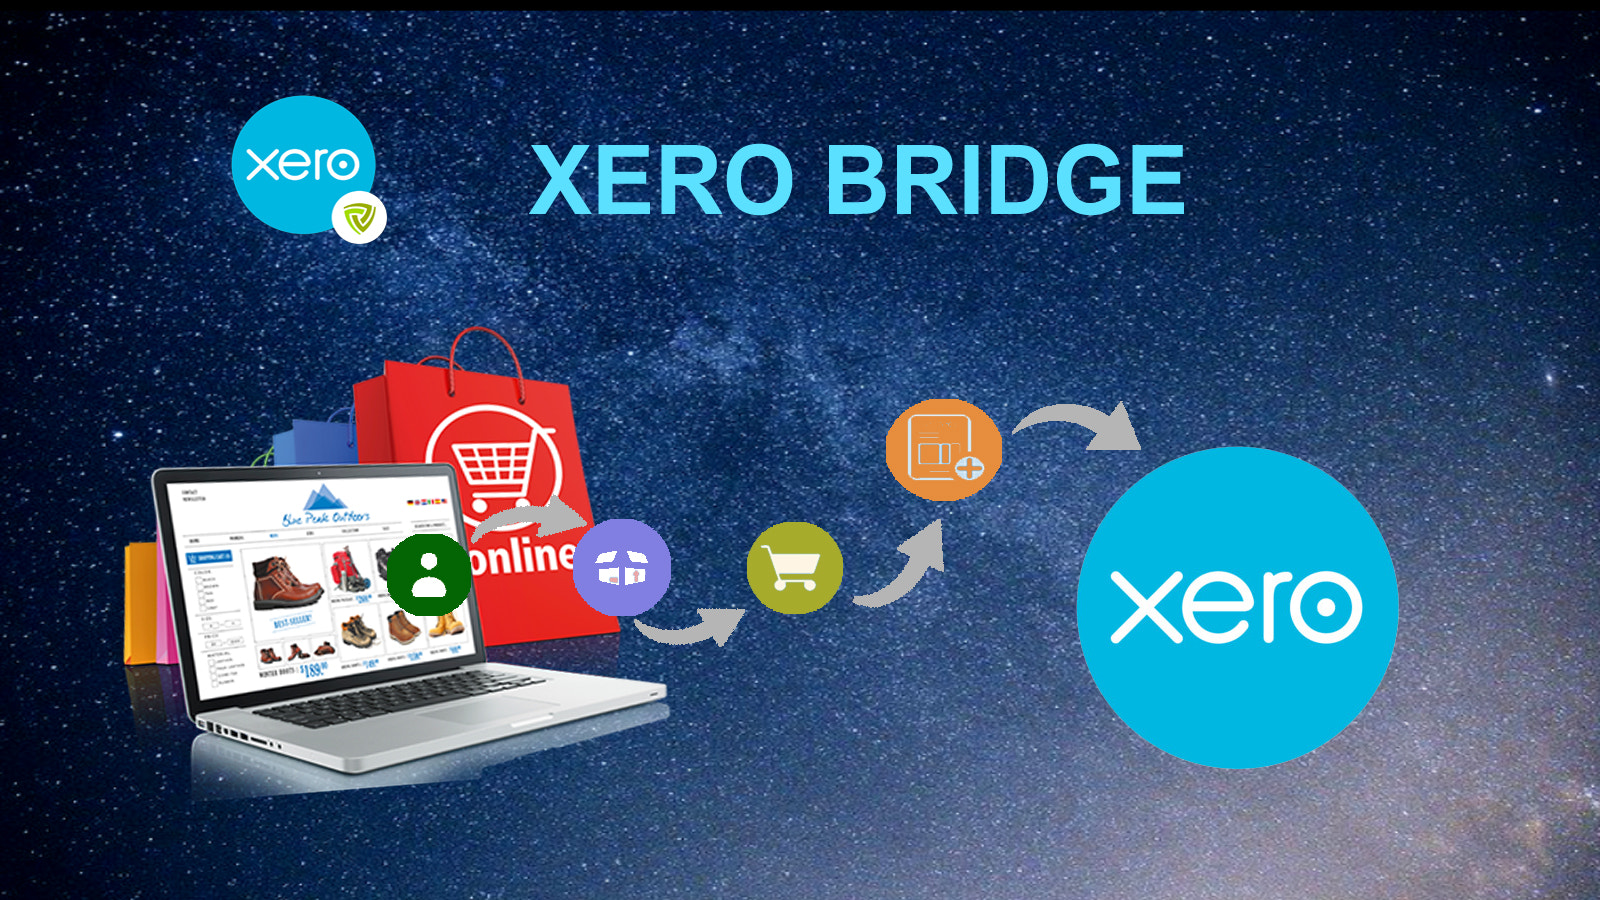 Xero Bridge by Parex